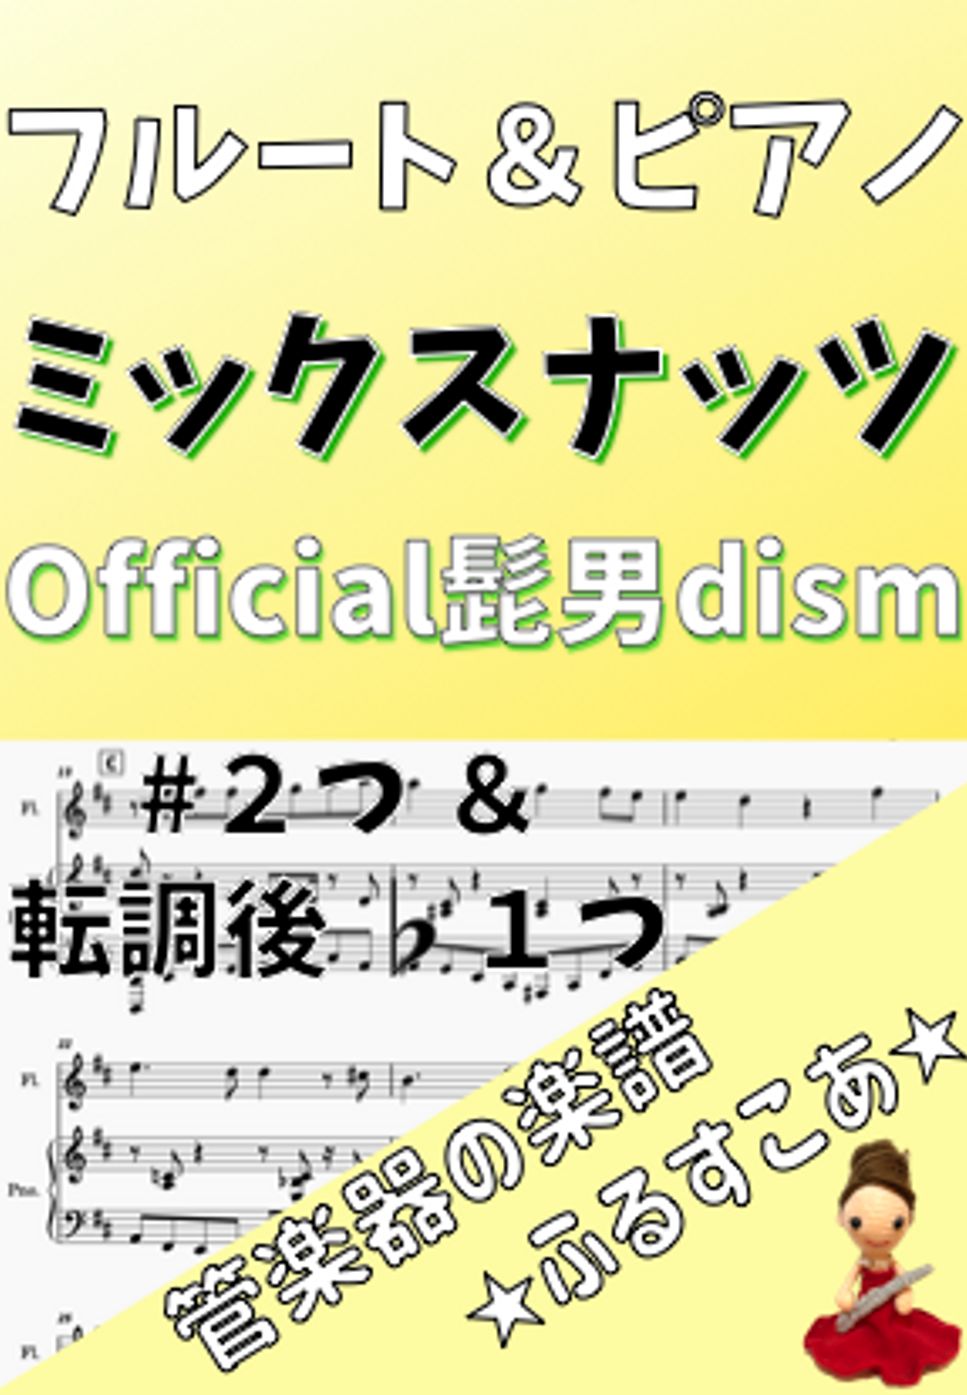 Official髭男dism - 【フルート＆ピアノ】#2＆♭1ミックスナッツ（Official髭男dism） by 管楽器の楽譜★ふるすこあ